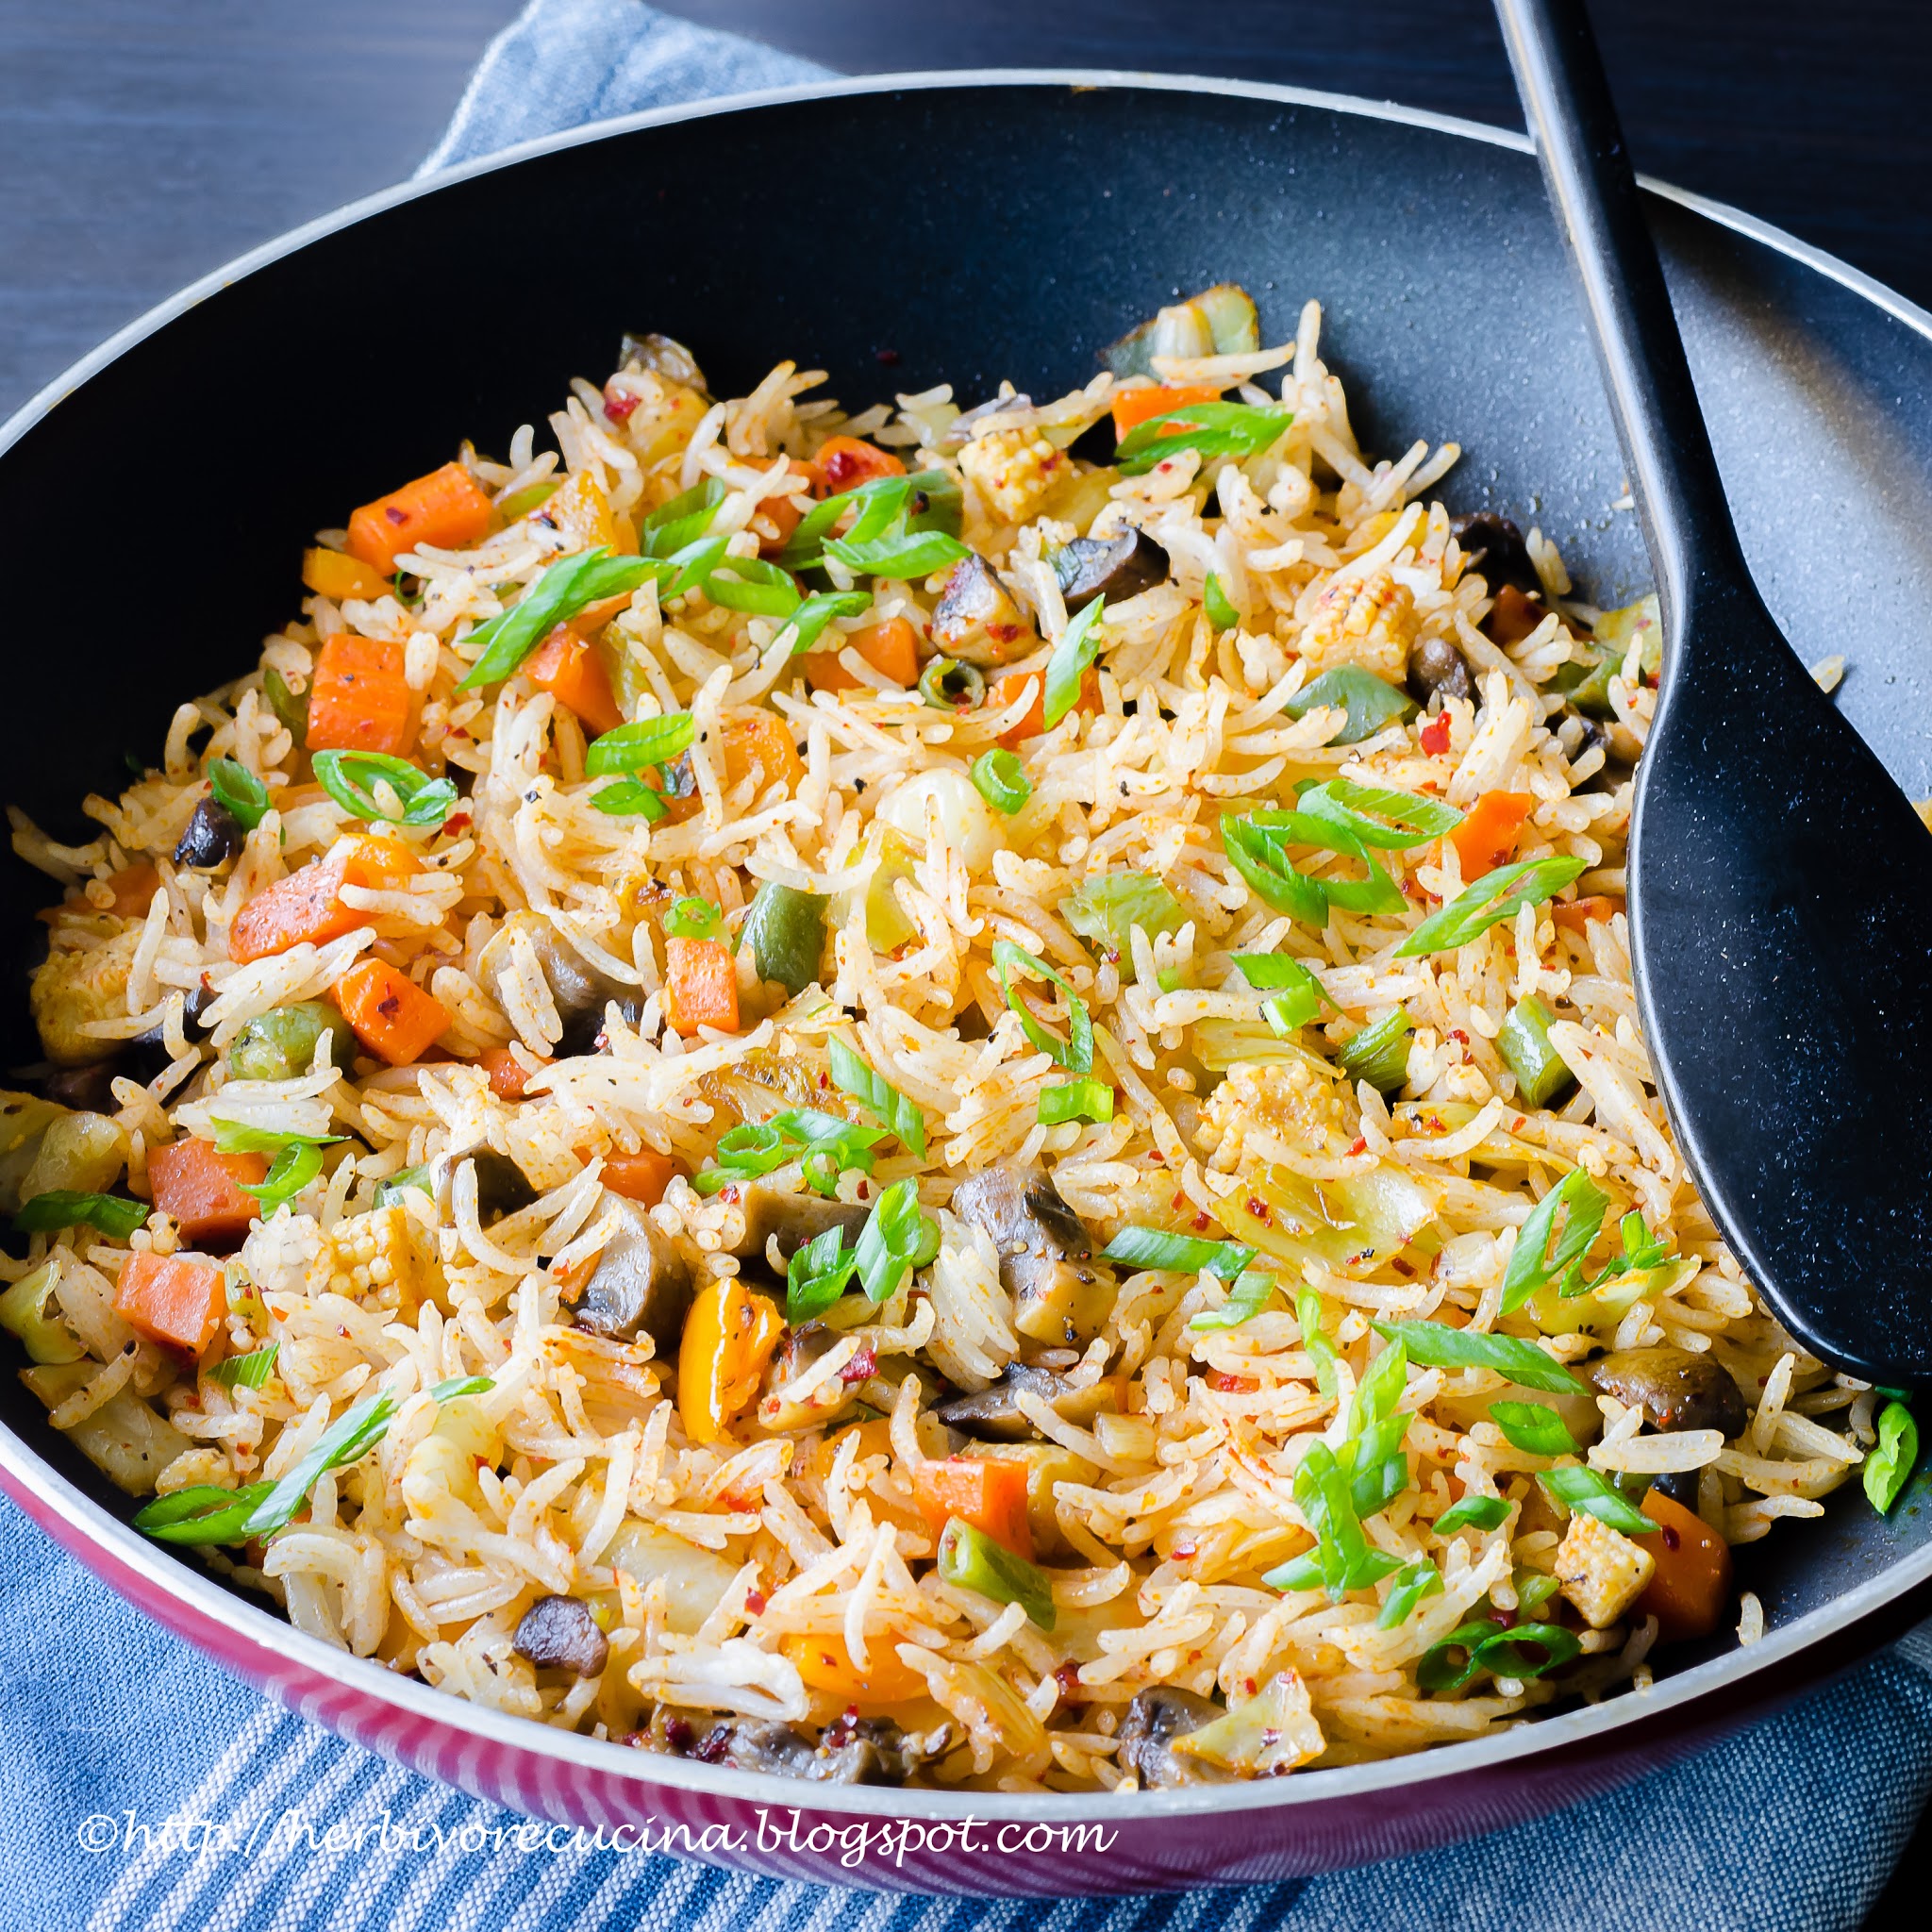 Schezwan Fried Rice - Herbivore Cucina